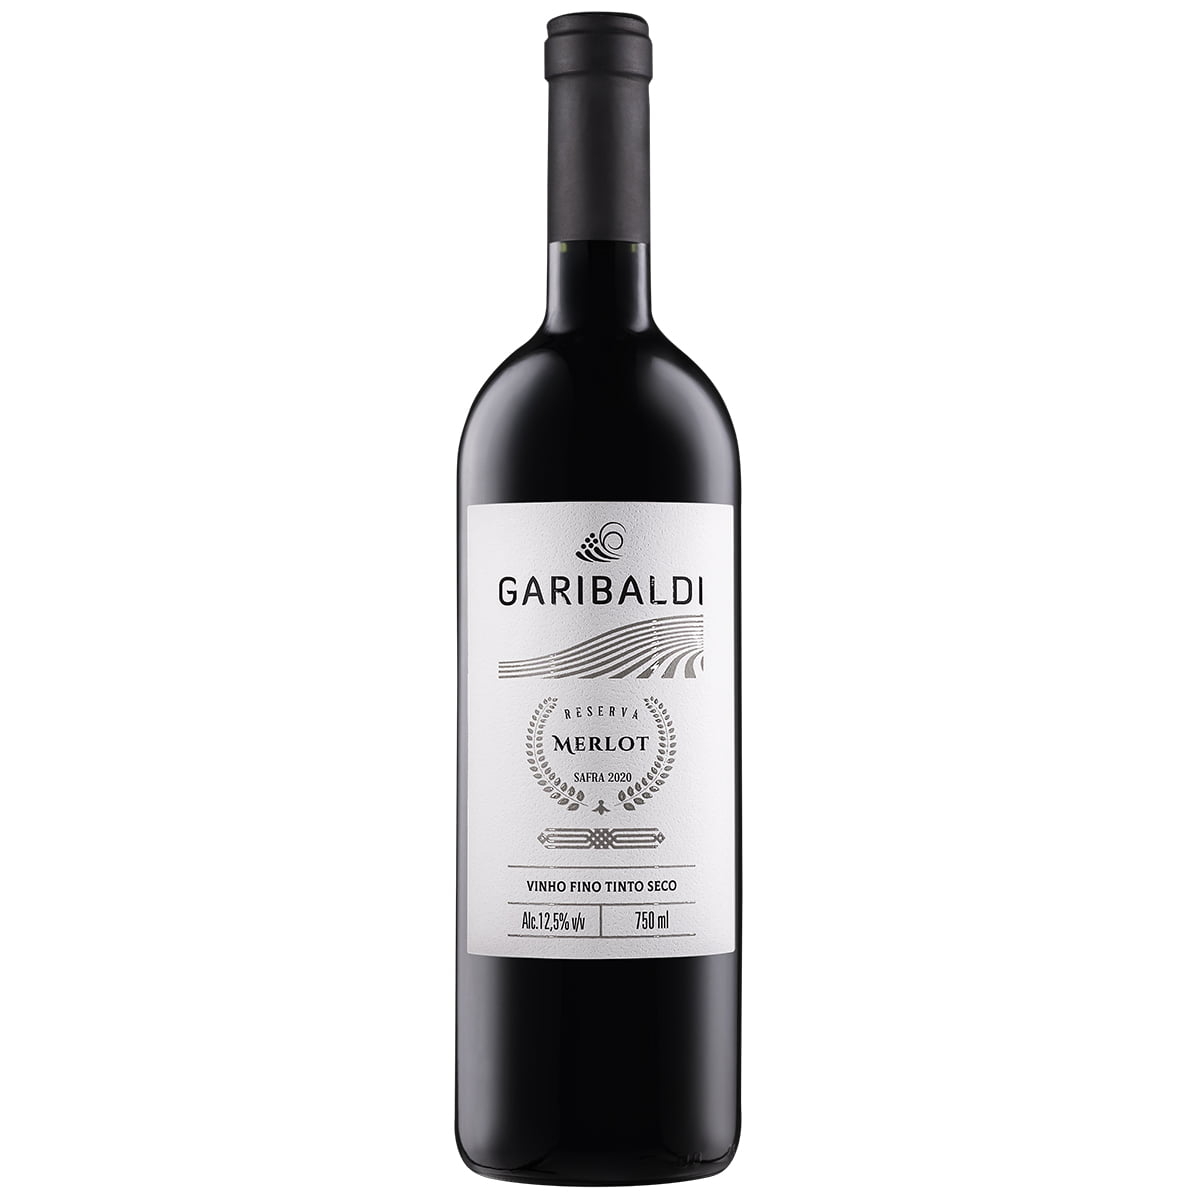 Garibaldi Reserva Merlot Vinho Tinto Seco 750ml